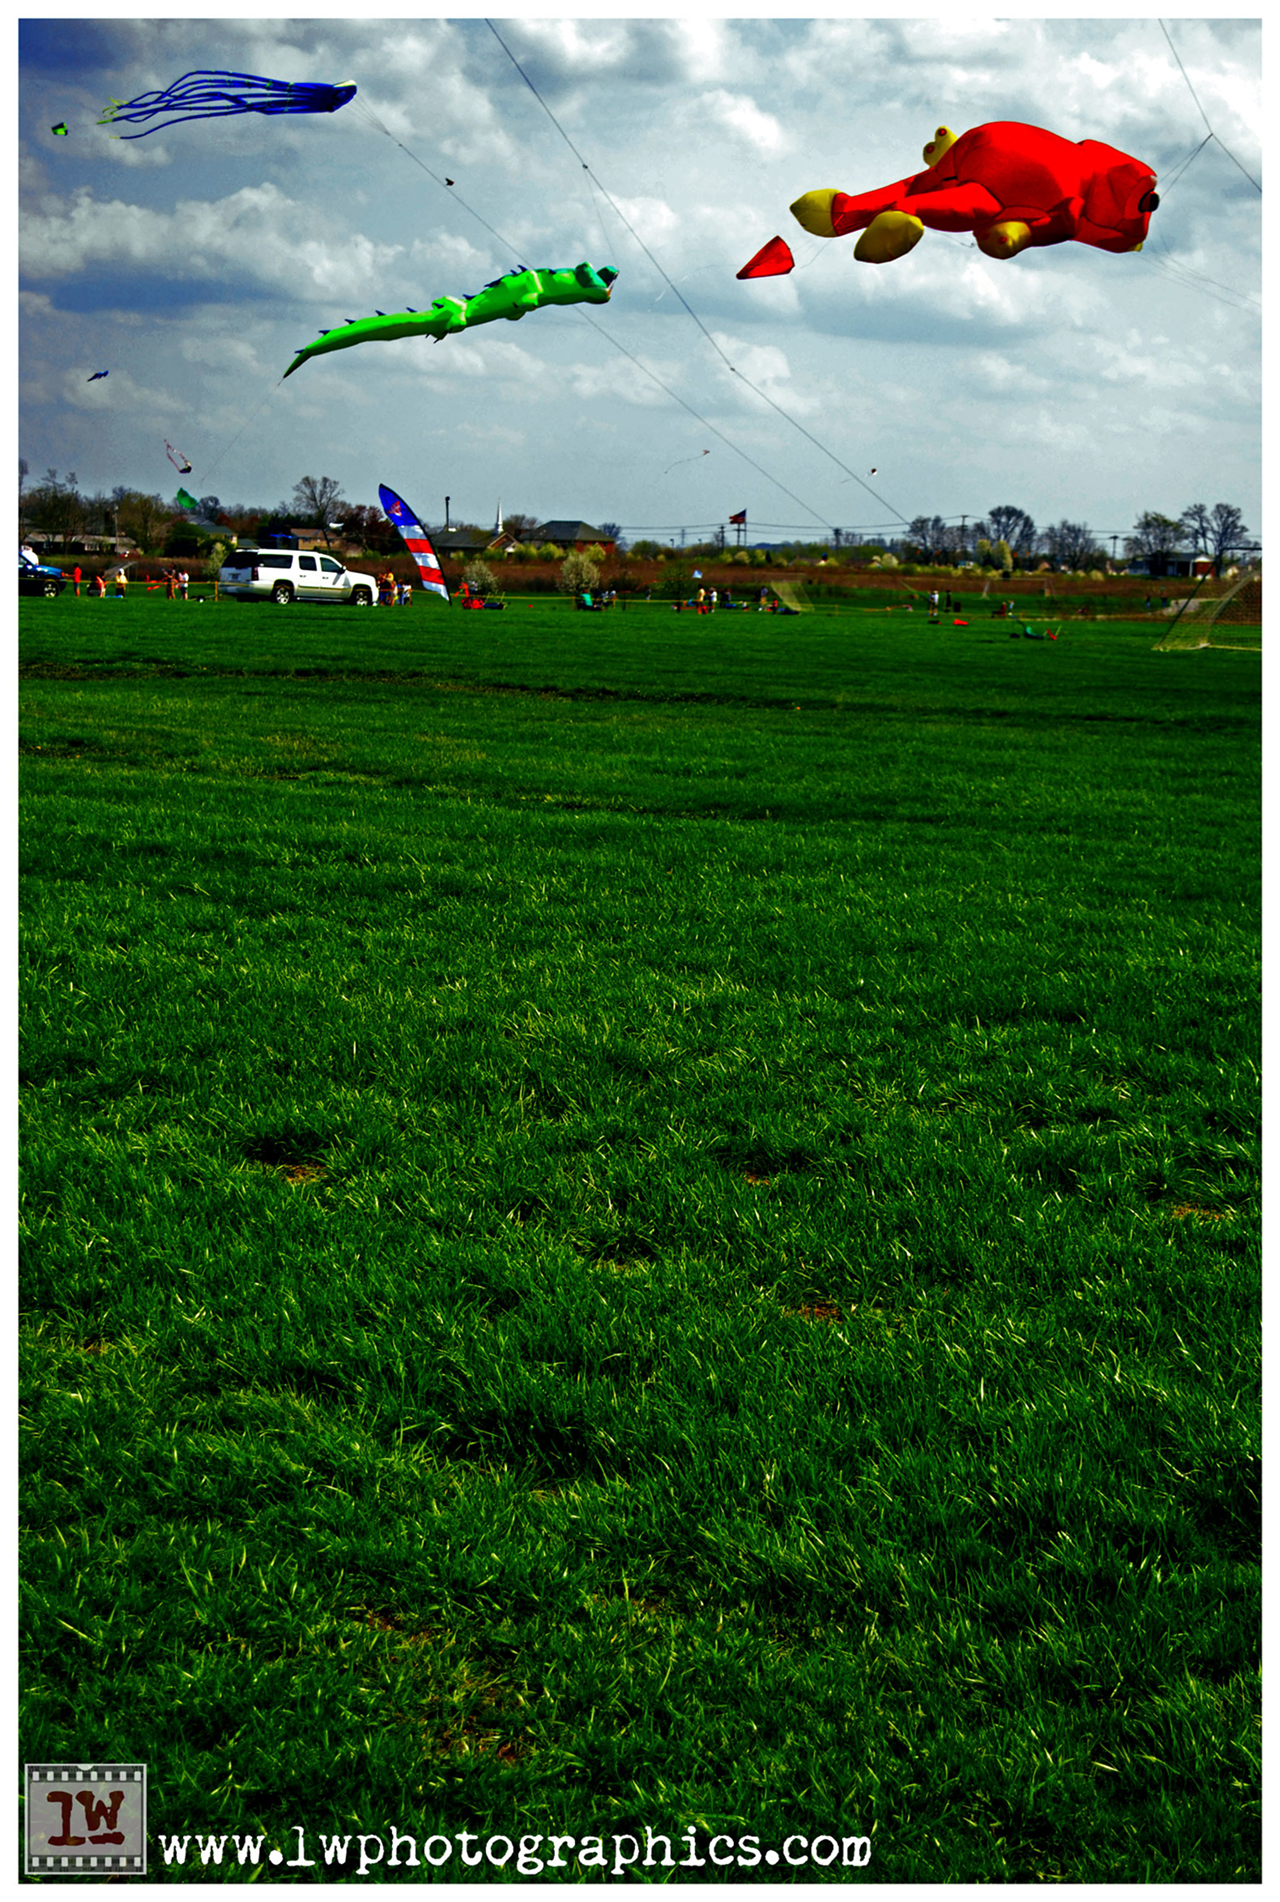 AirWaves Kite Fest